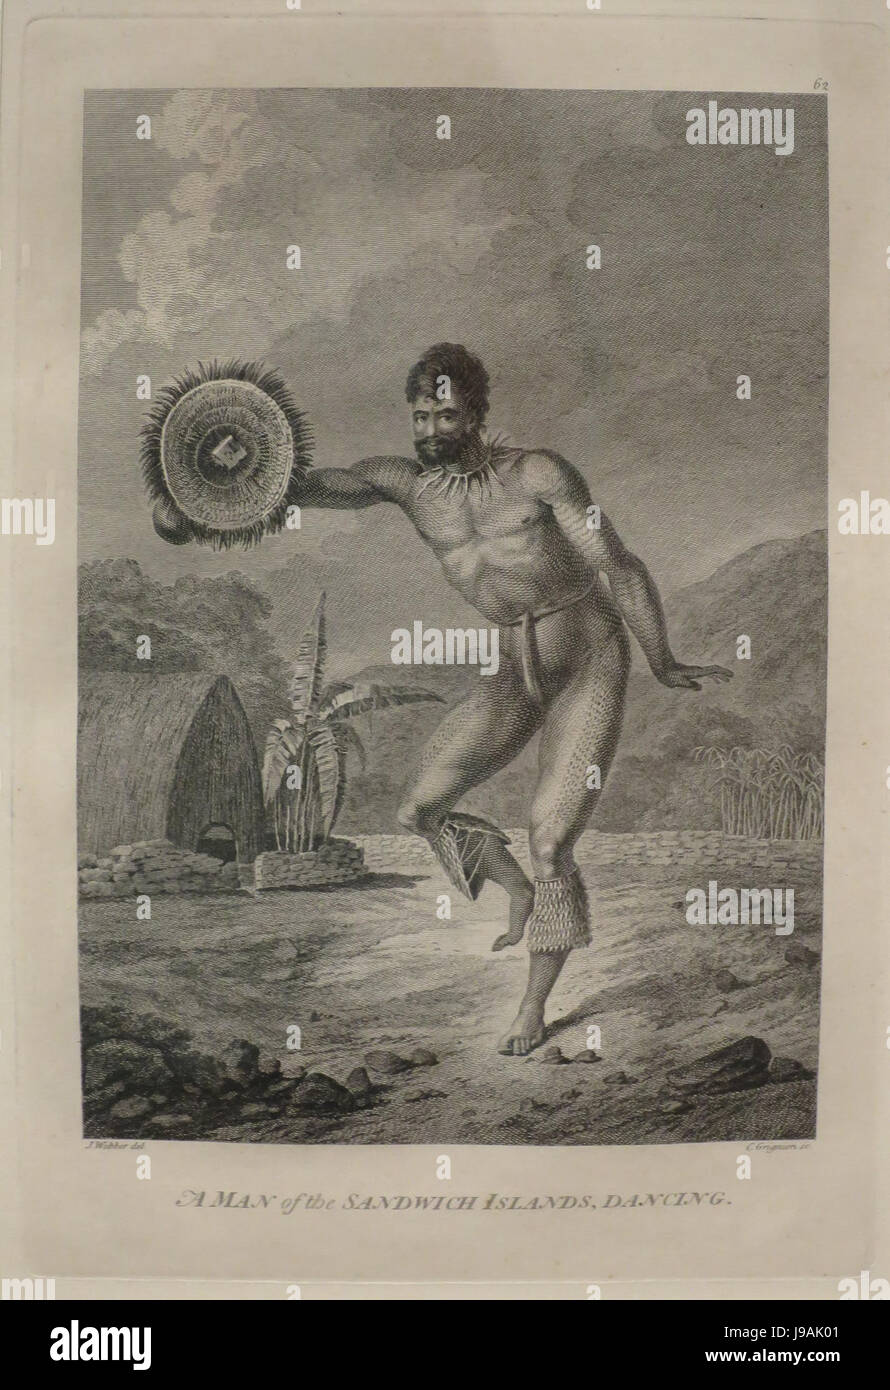 "Un uomo del Sandwich Islands, Dancing' dopo John Webber, 1784, Honolulu Museum of Art Foto Stock